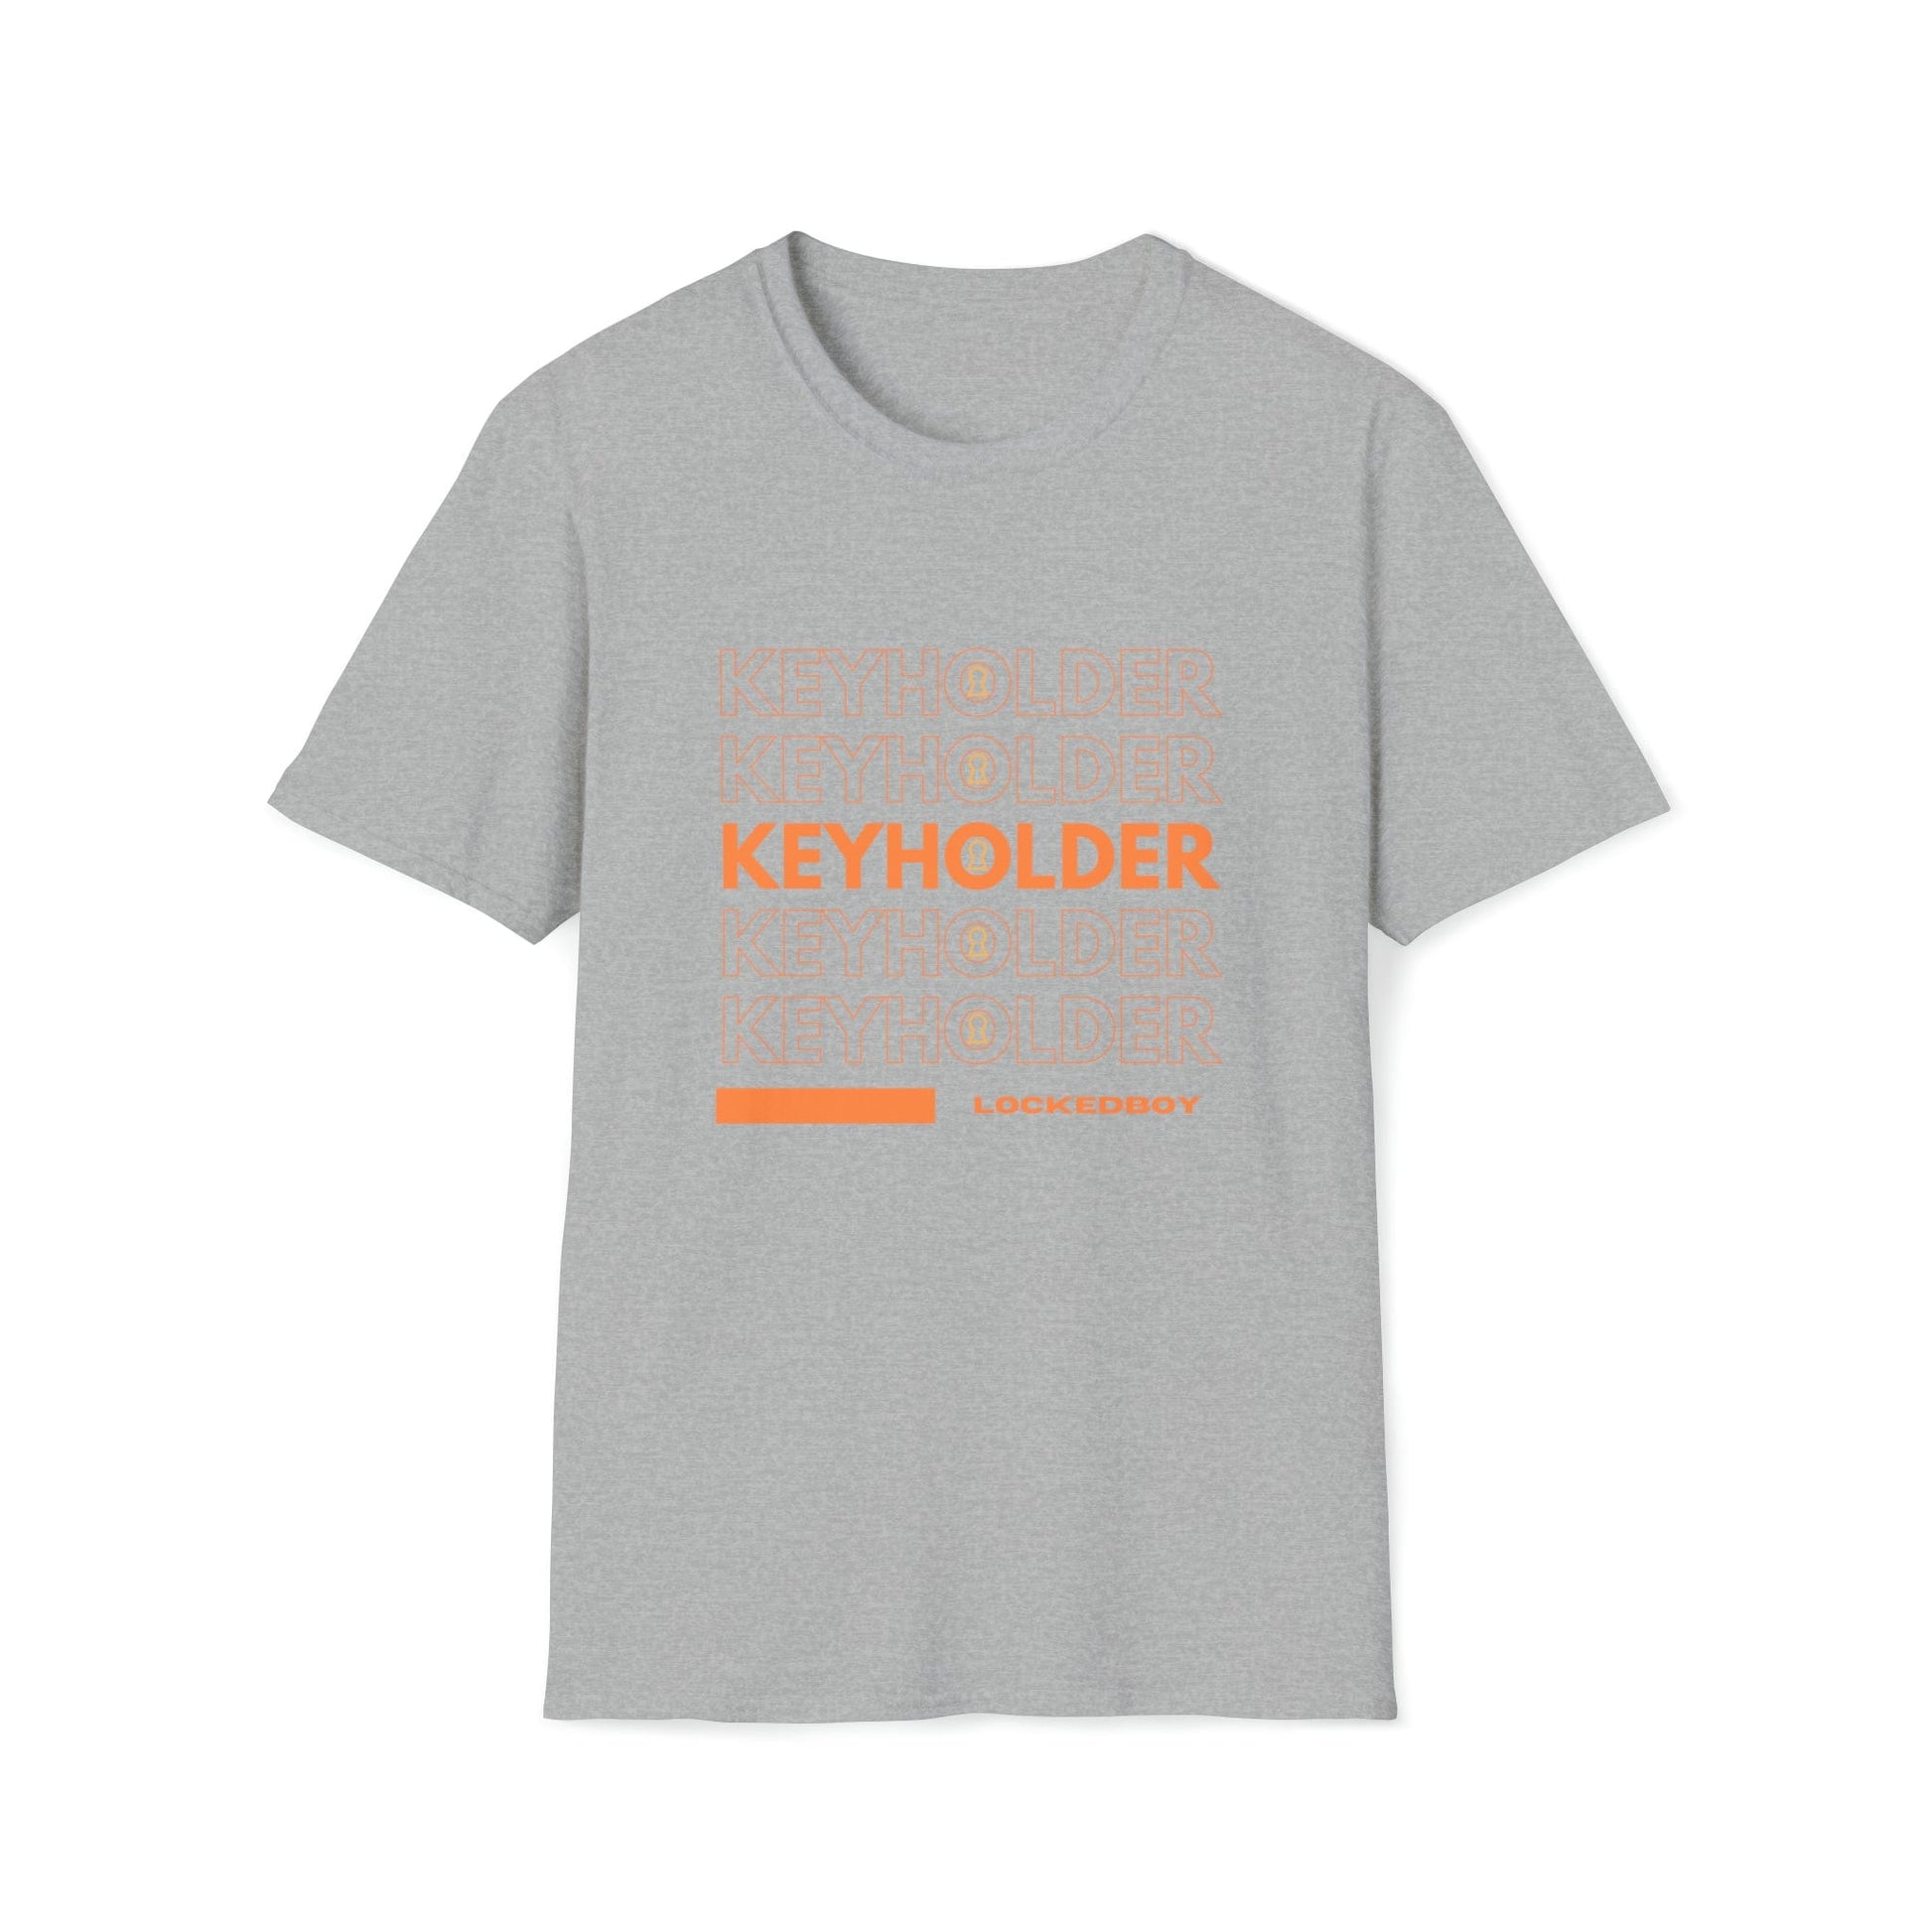 T-Shirt Sport Grey / S KEYHOLDER bag Inspo - Chastity Shirts by LockedBoy Athletic LEATHERDADDY BATOR